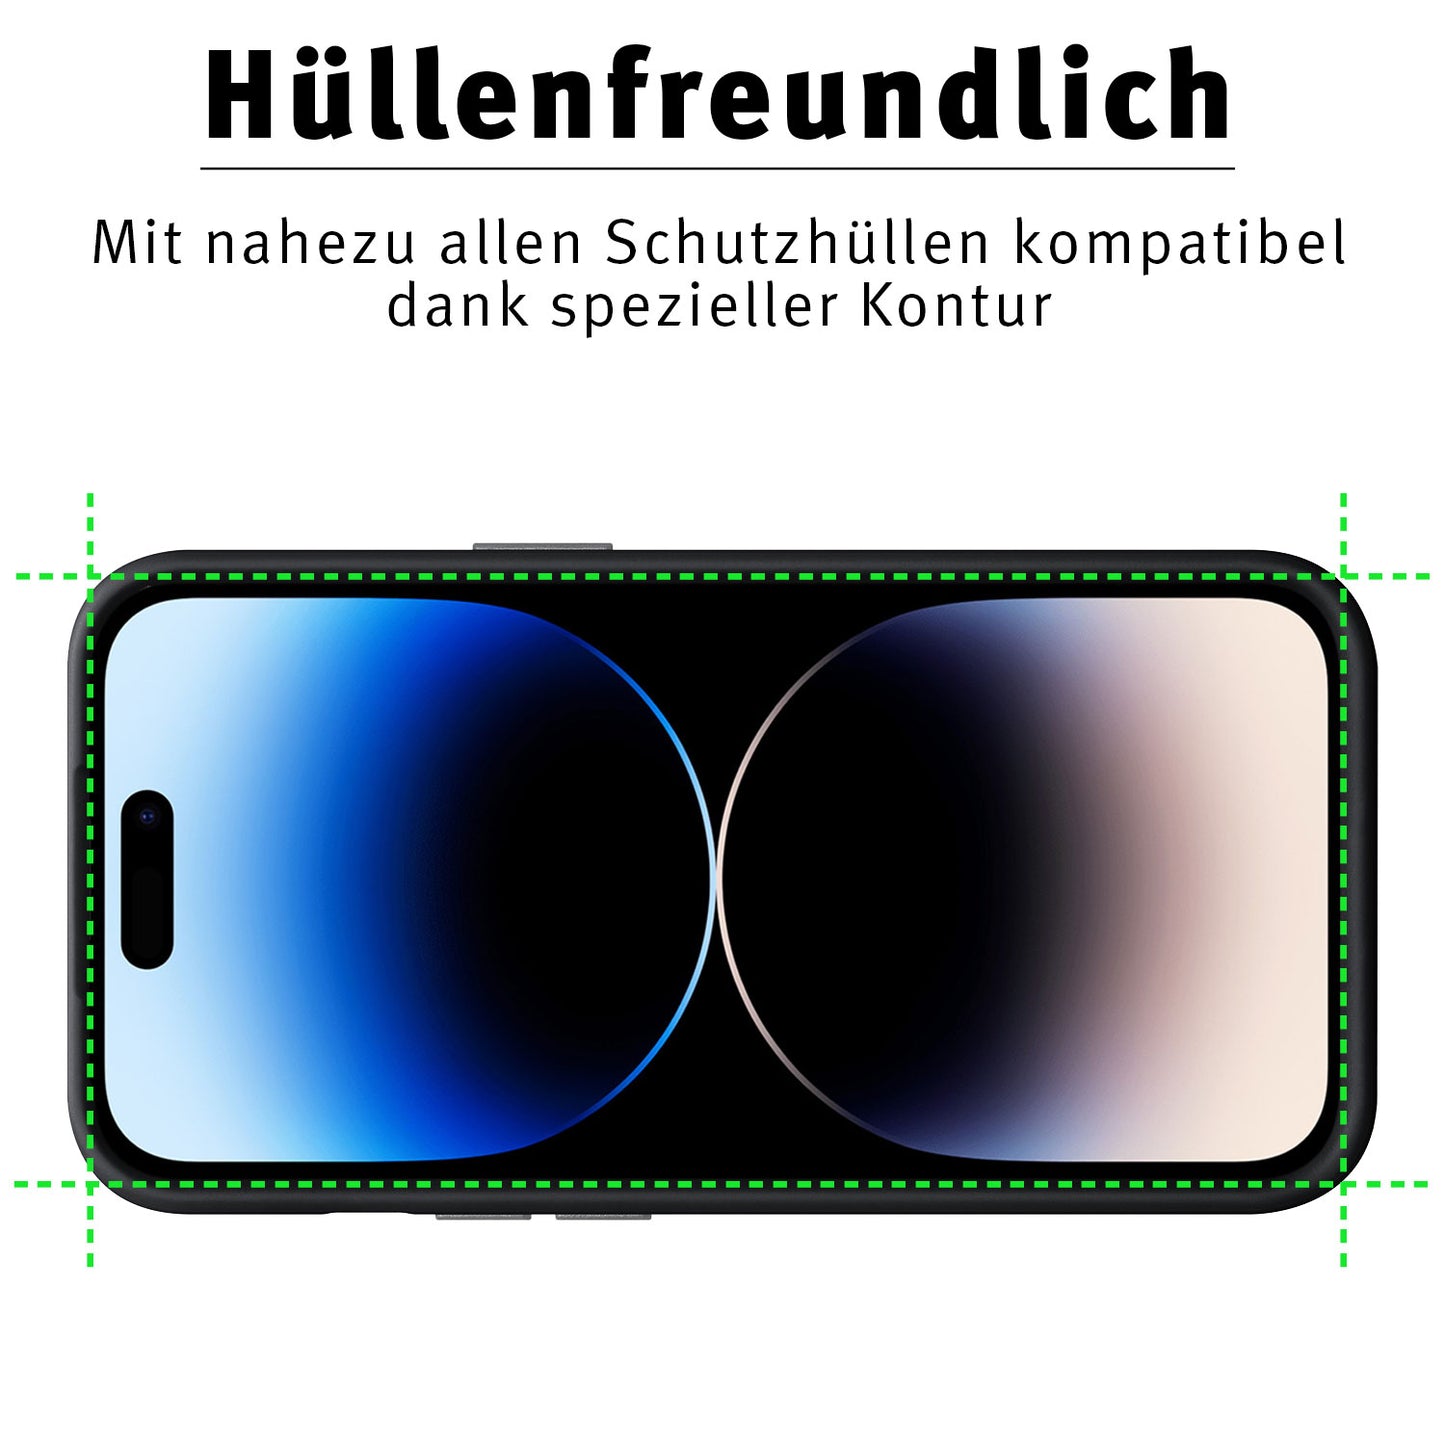 ArktisPRO iPhone 14 Pro FULL COVER Displayschutz GLAS - hüllenfreundlich - 3er Set